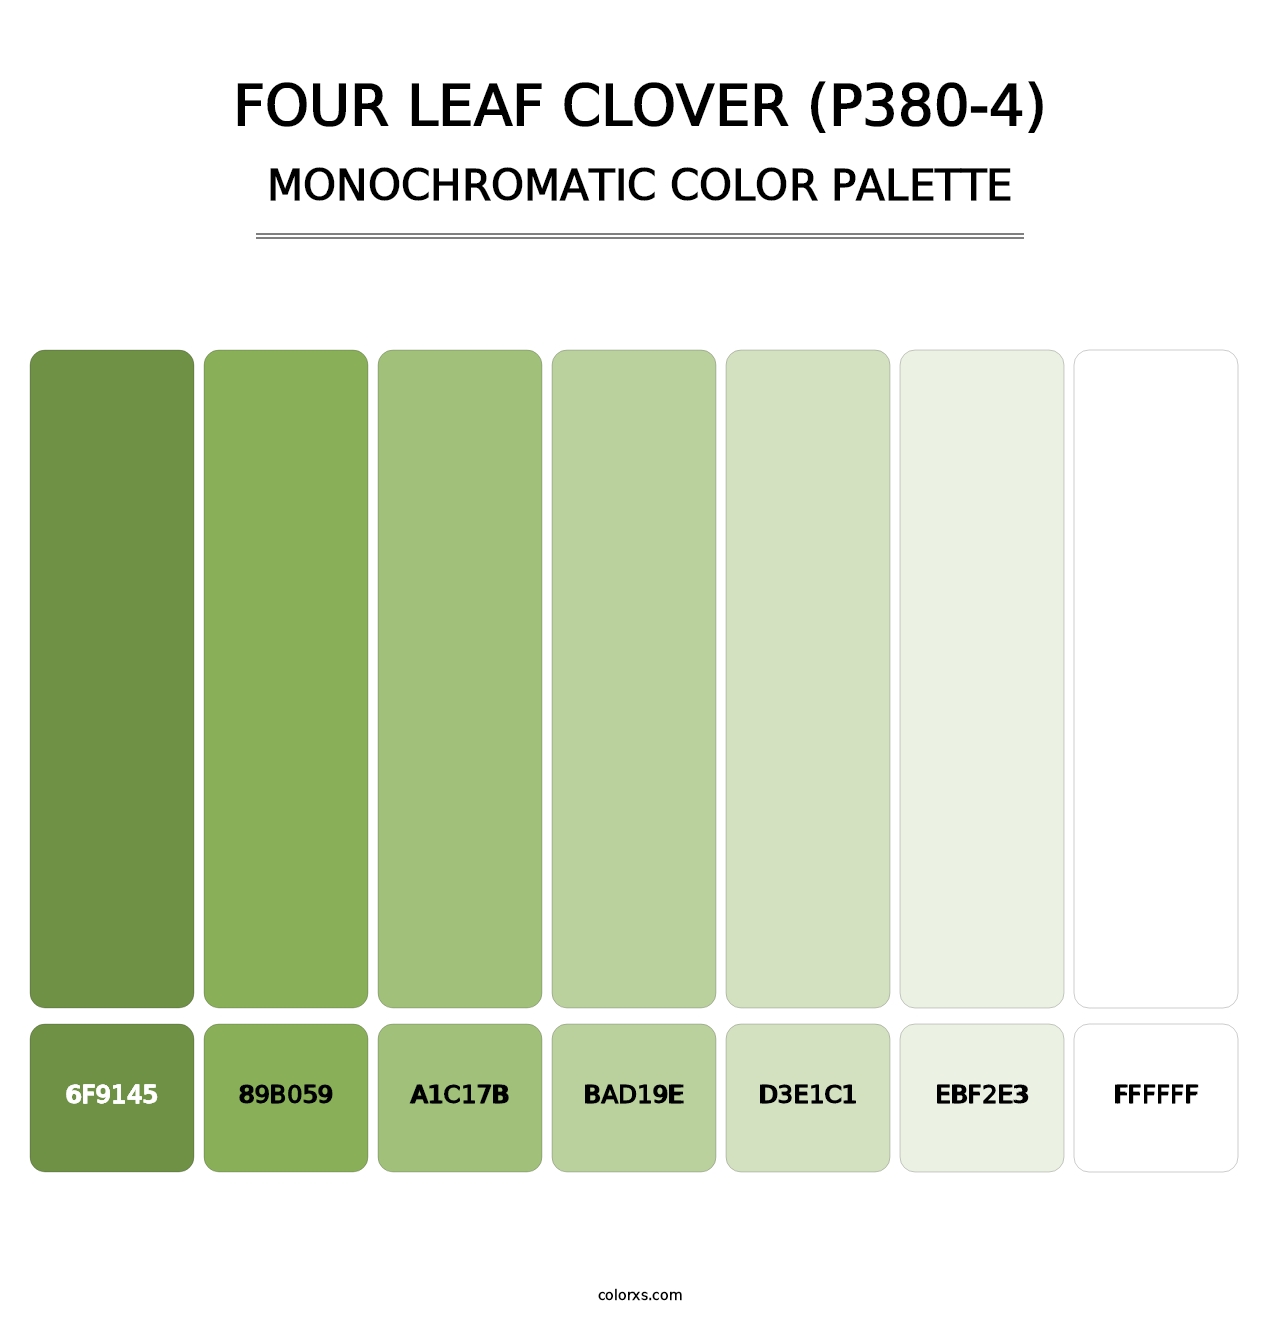 Four Leaf Clover (P380-4) - Monochromatic Color Palette